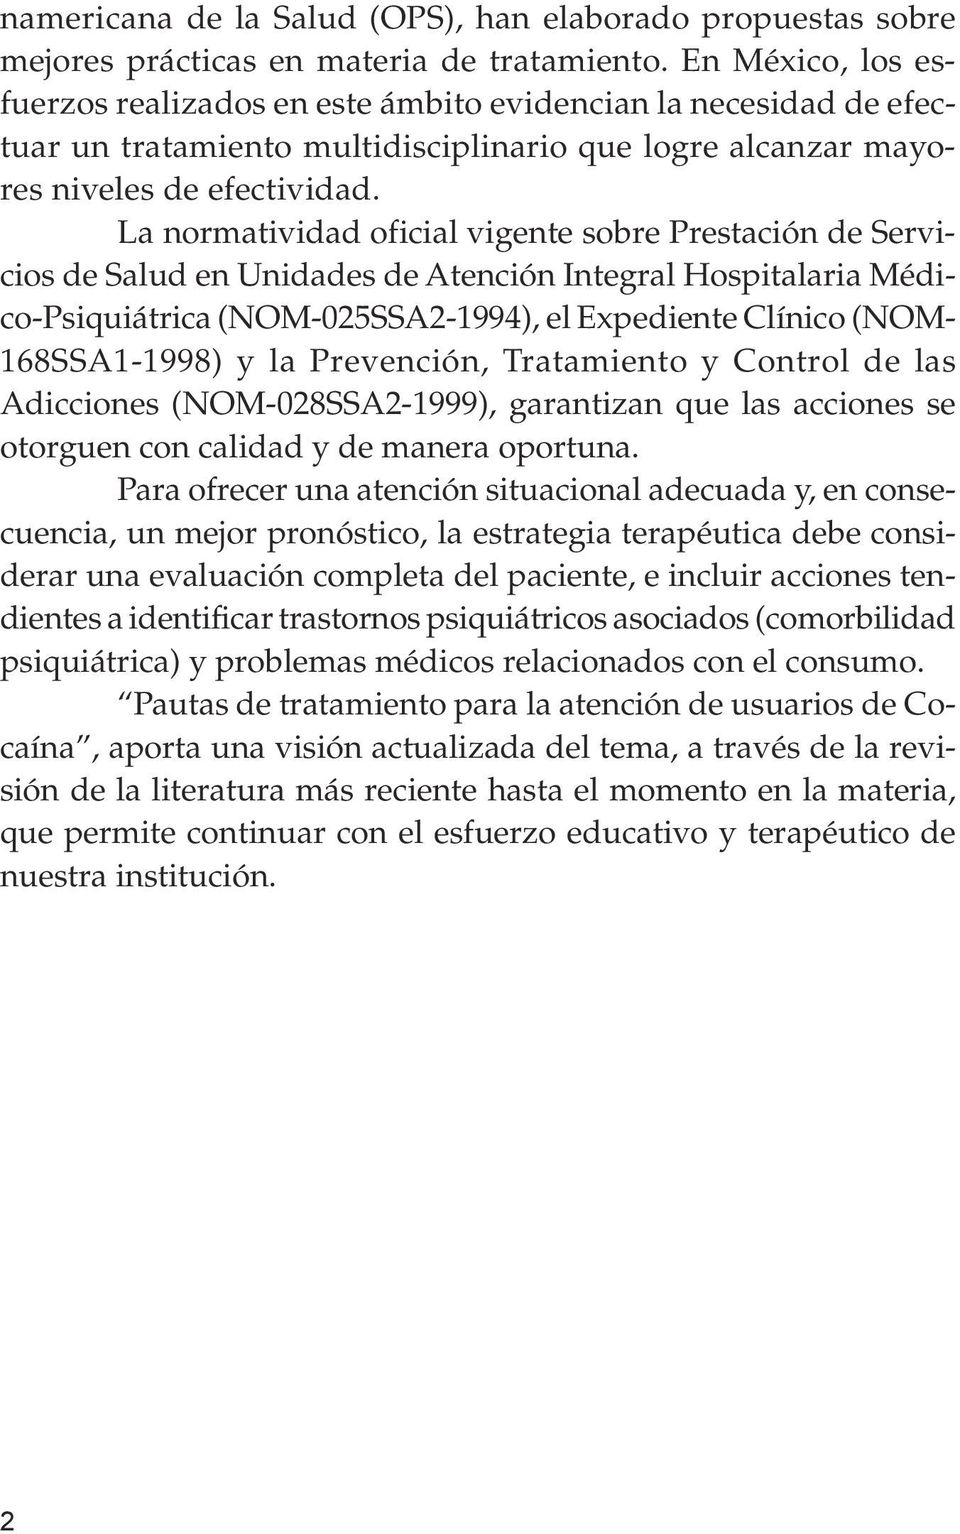 La normatividad oficial vigente sobre Prestación de Servicios de Salud en Unidades de Atención Integral Hospitalaria Médico-Psiquiátrica (NOM-025SSA2-1994), el Expediente Clínico (NOM- 168SSA1-1998)